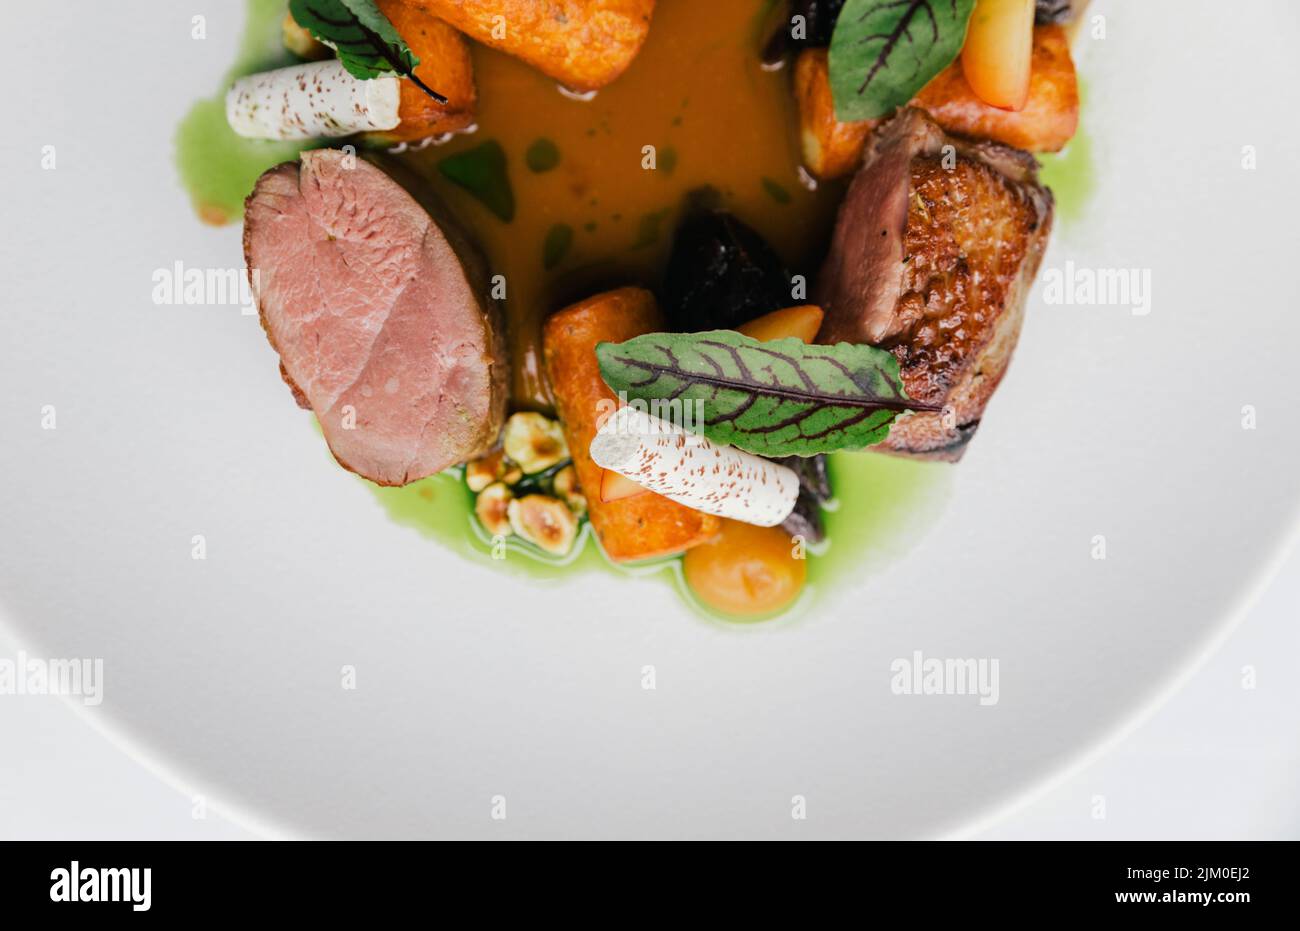 Un top shot di un piatto gourmet con carne, verdure e salsa Foto Stock